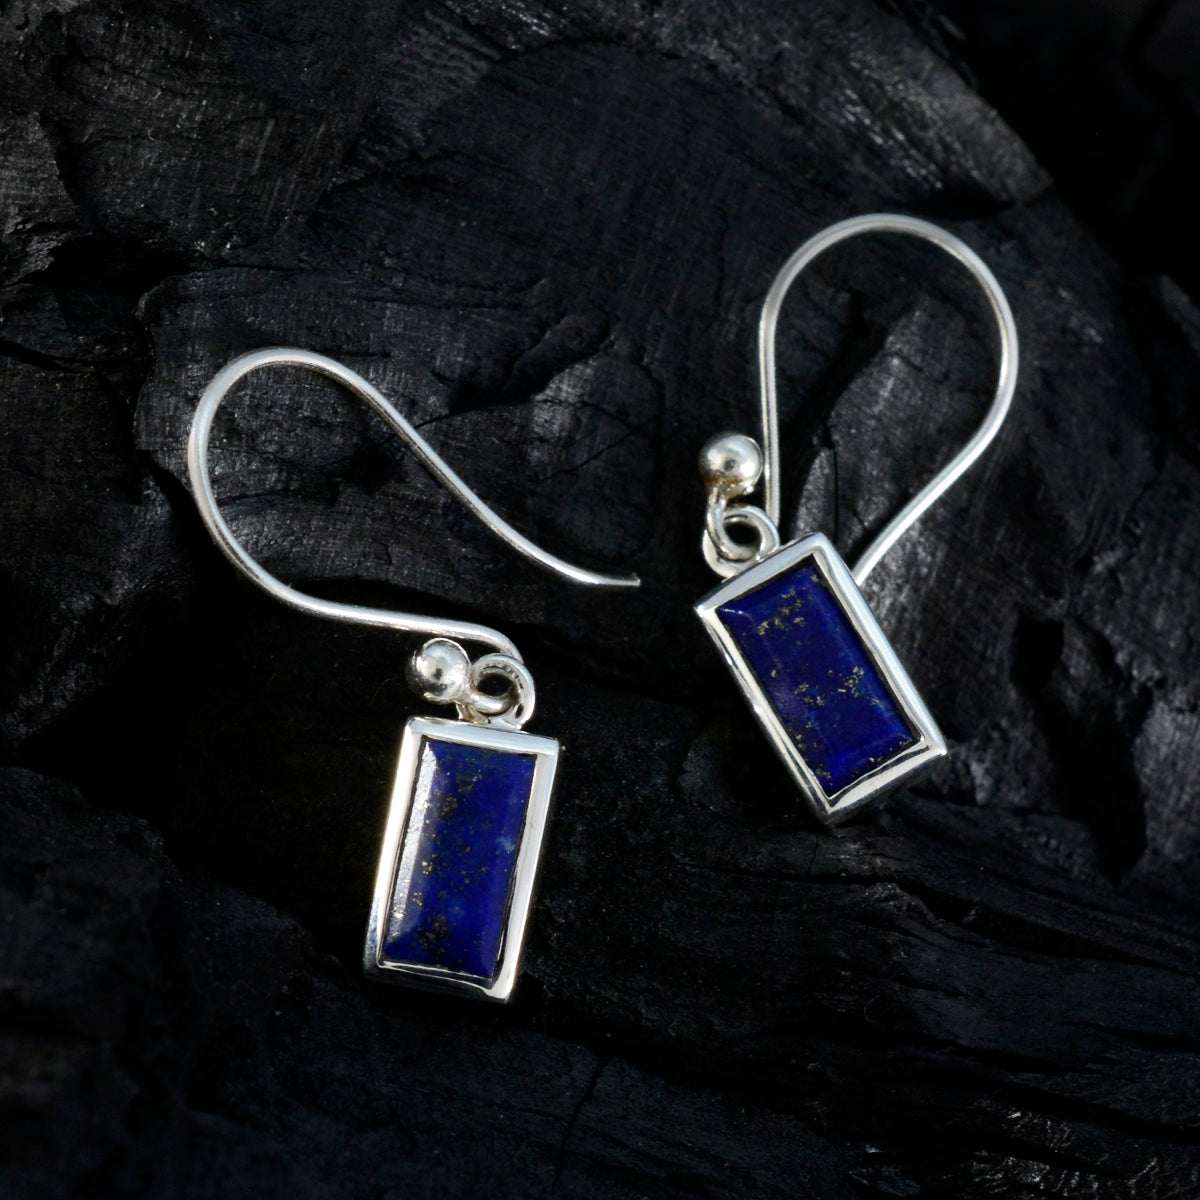 Riyo Prachtige Sterling zilveren oorbel voor vrouw Lapis Lazuli Oorbel Bezel Setting Blauwe oorbel Dangle Earring